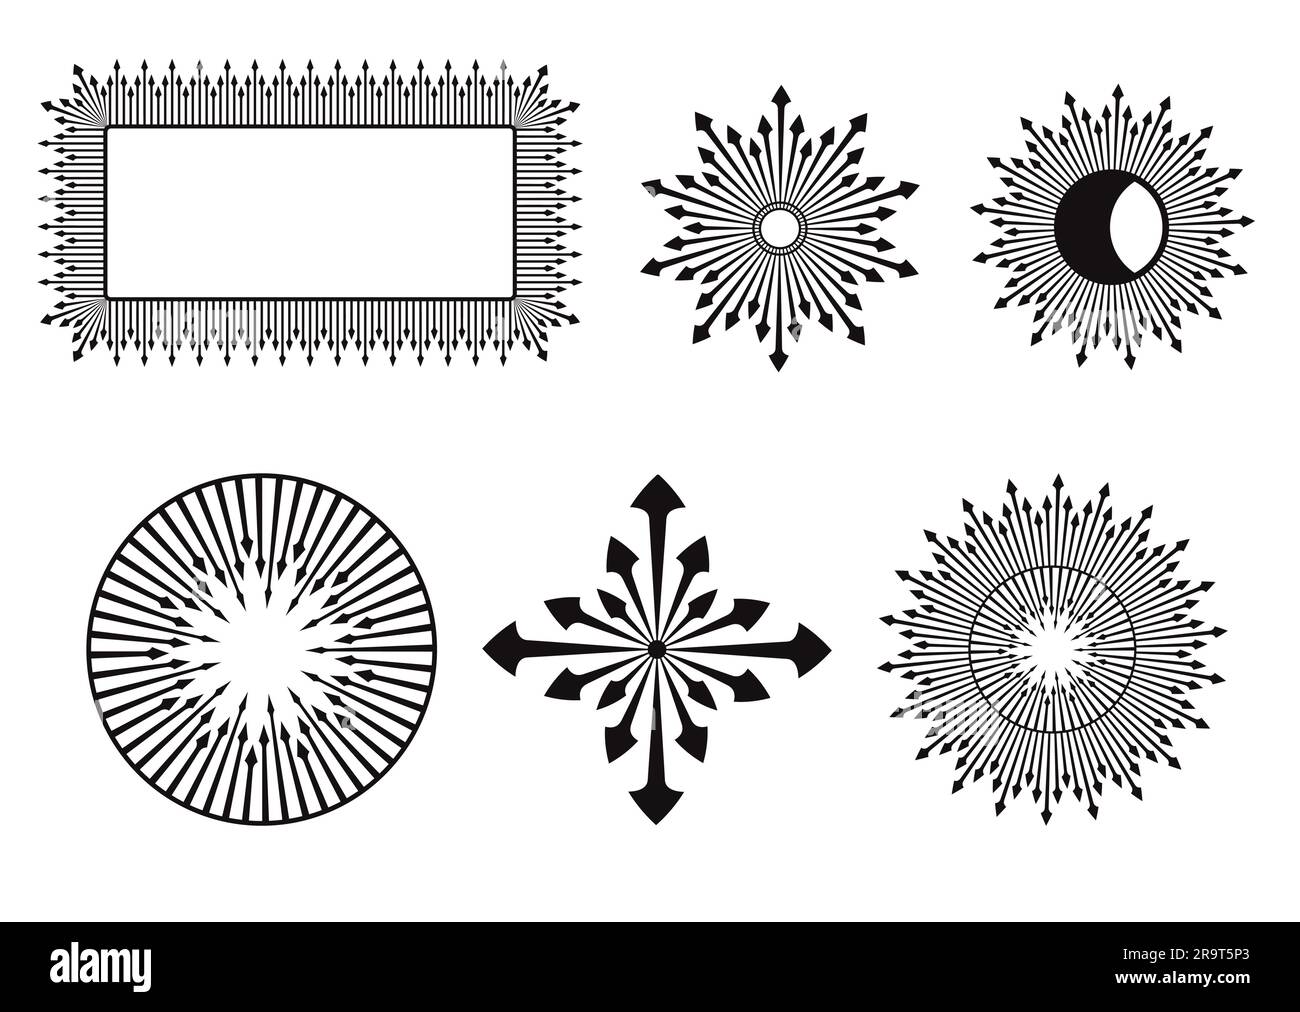 Cadre décoratif, étoiles, soleil, lune motif de flèche noire Doodle illustrations éléments de conception Illustration vectorielle isolée sur fond blanc Illustration de Vecteur